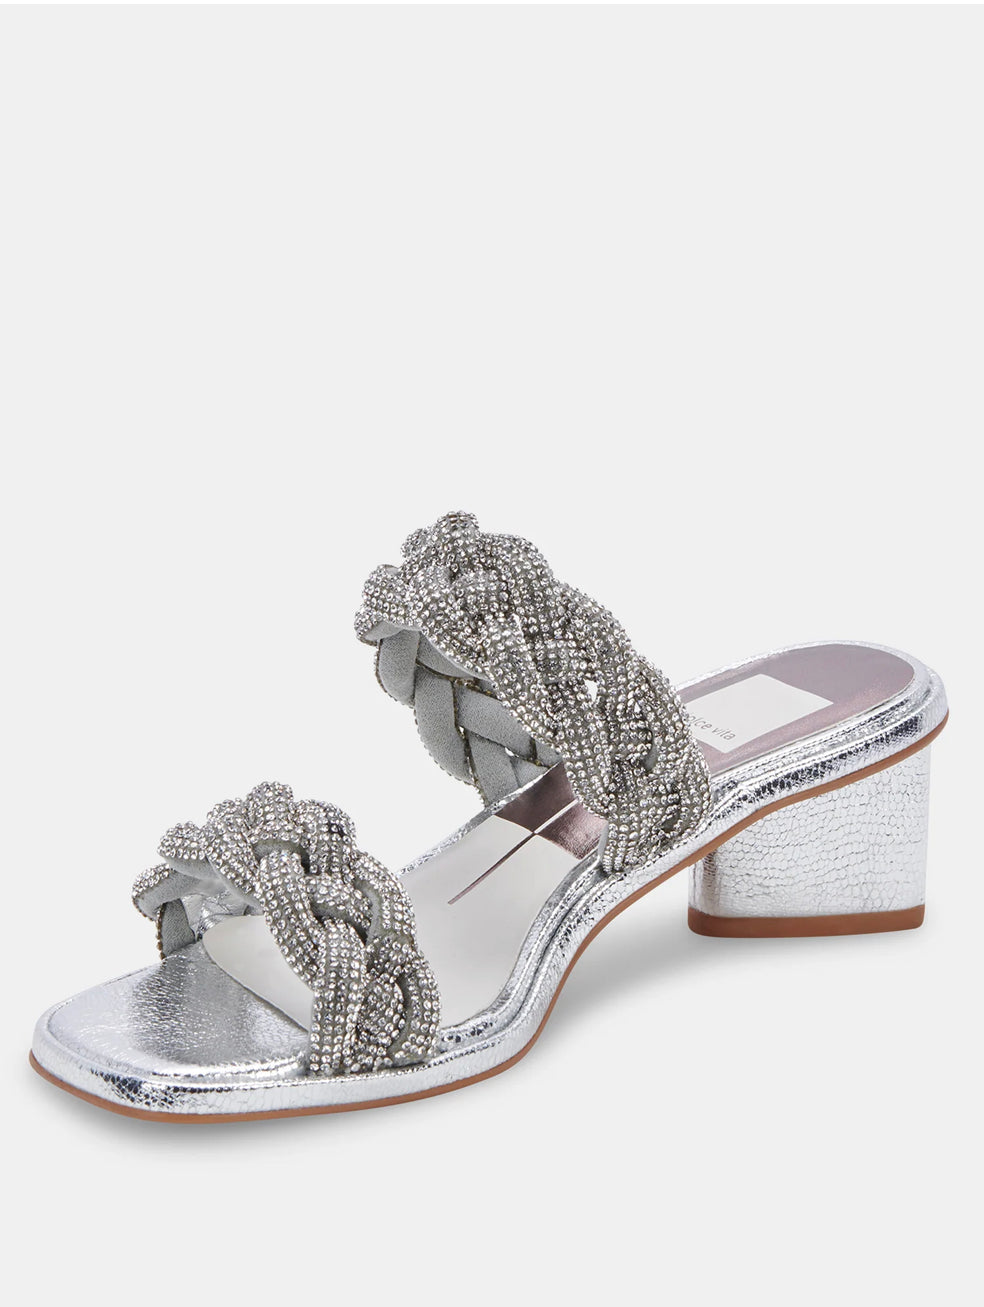 Buy Women Silver Casual Slip Ons Online | SKU: 40-139-27-36-Metro Shoes